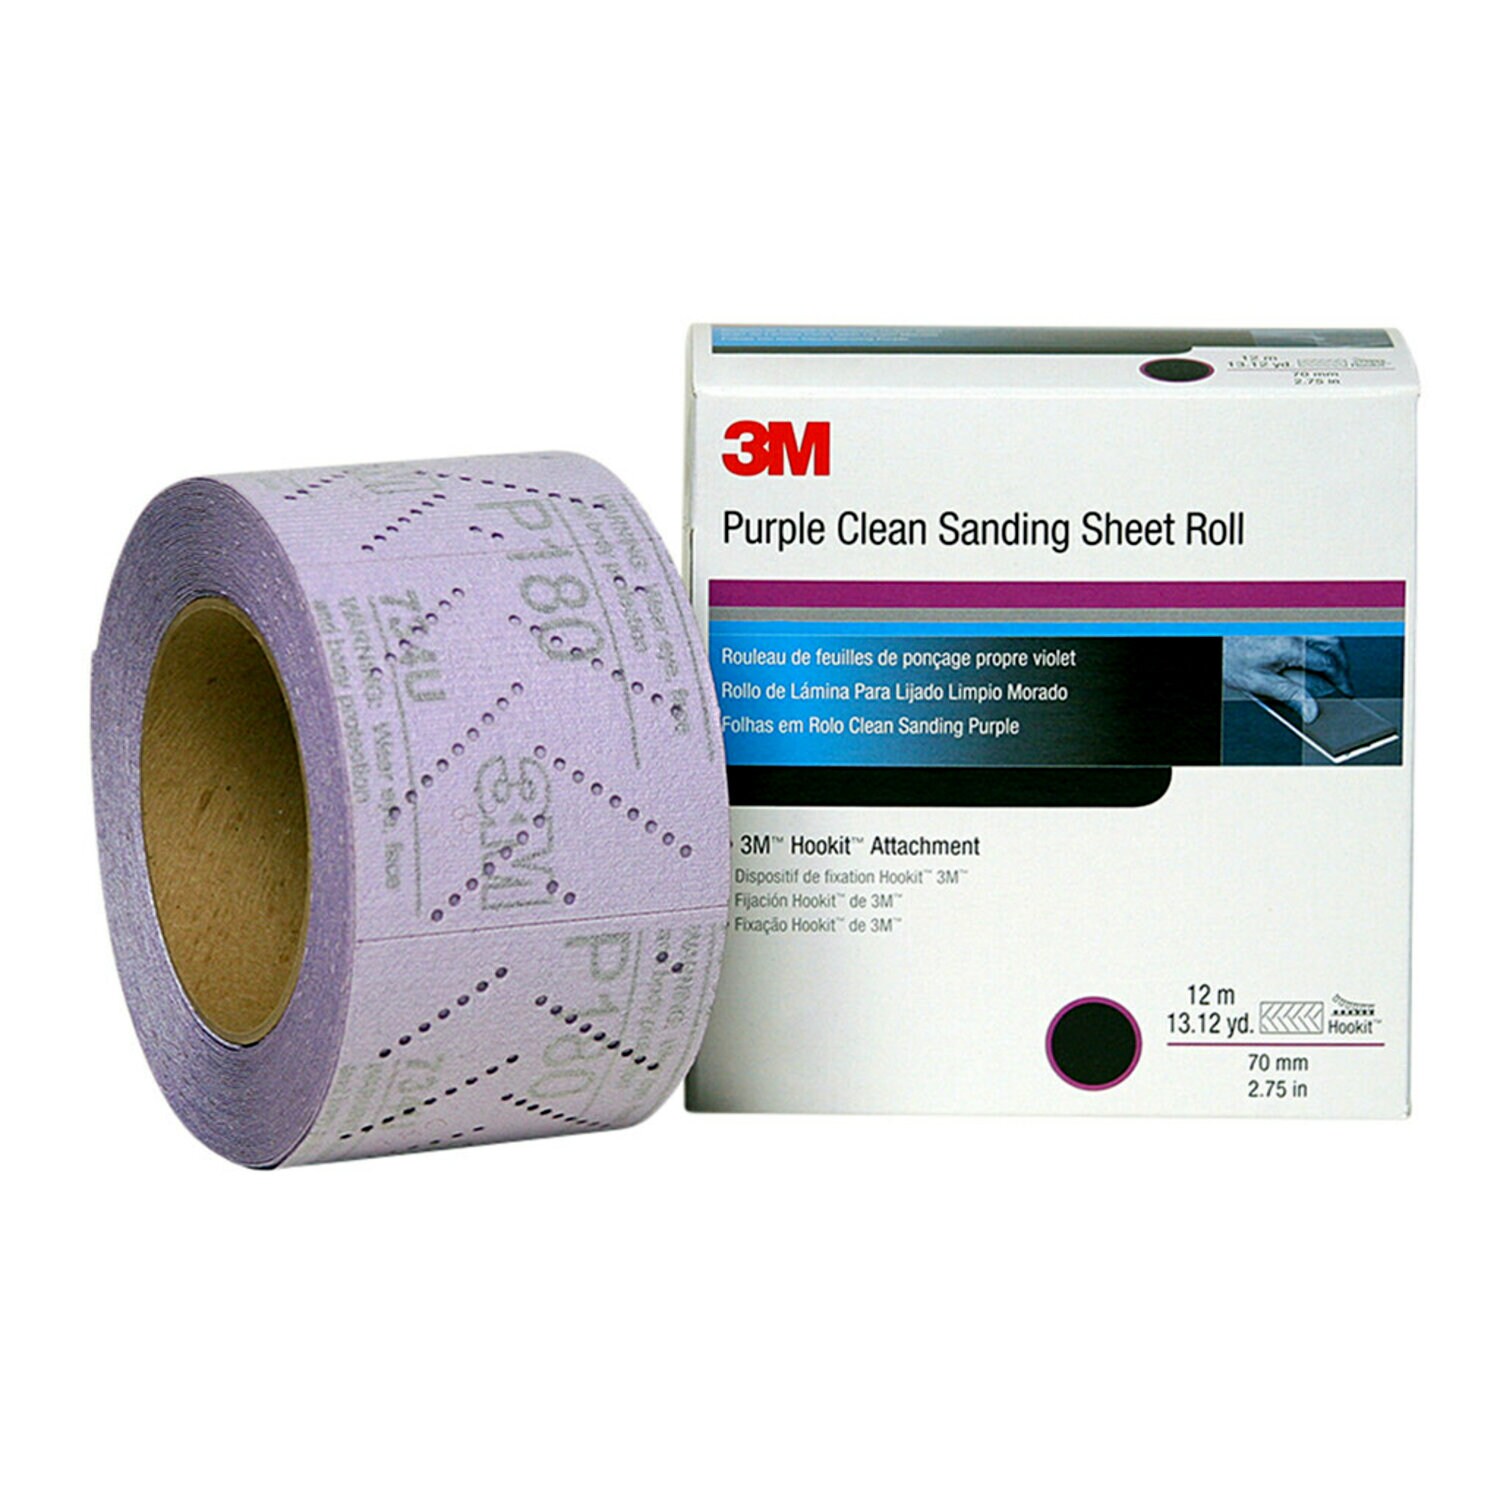 7100010877 - 3M Hookit Purple Clean Sanding Sheet Roll 334U, 30702, P500, 70 mm x
12m, 5 rolls per case